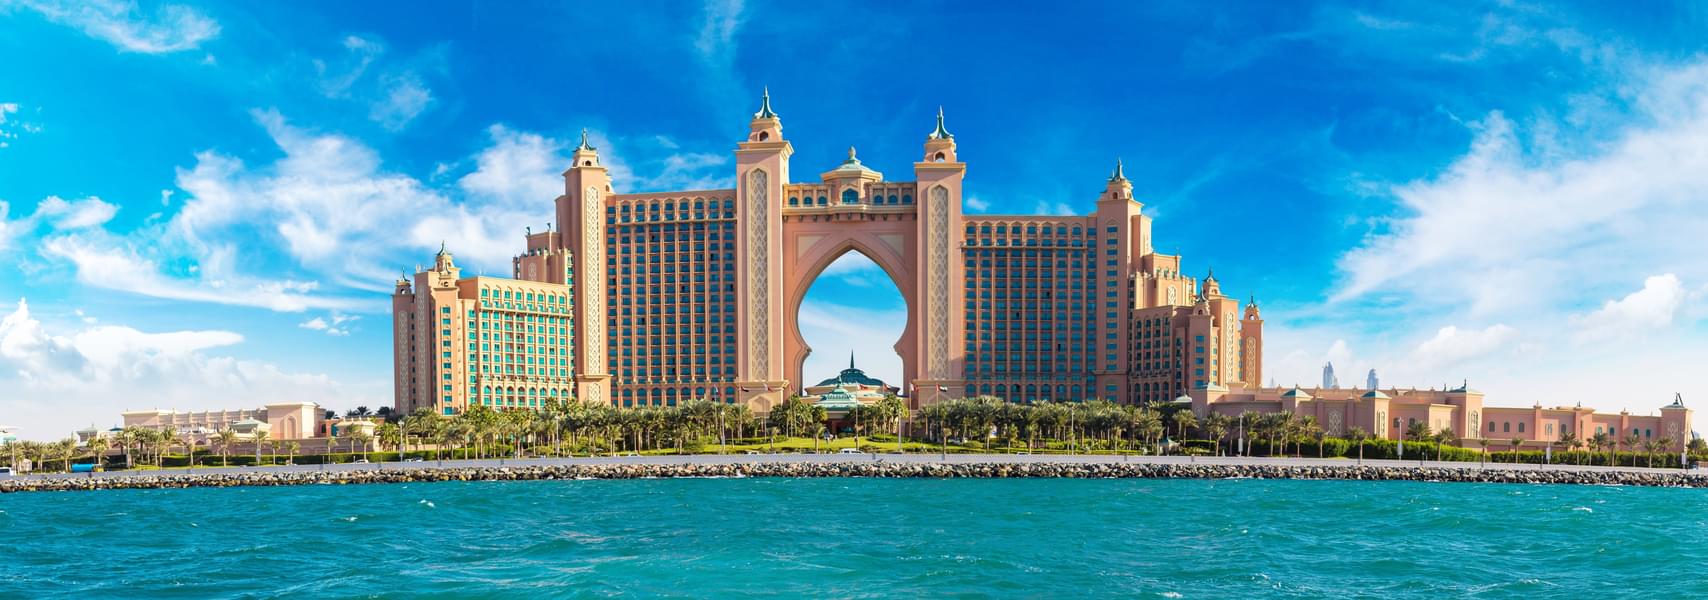 Admire the incredible Atlantis hotel, a major highlight of Dubai